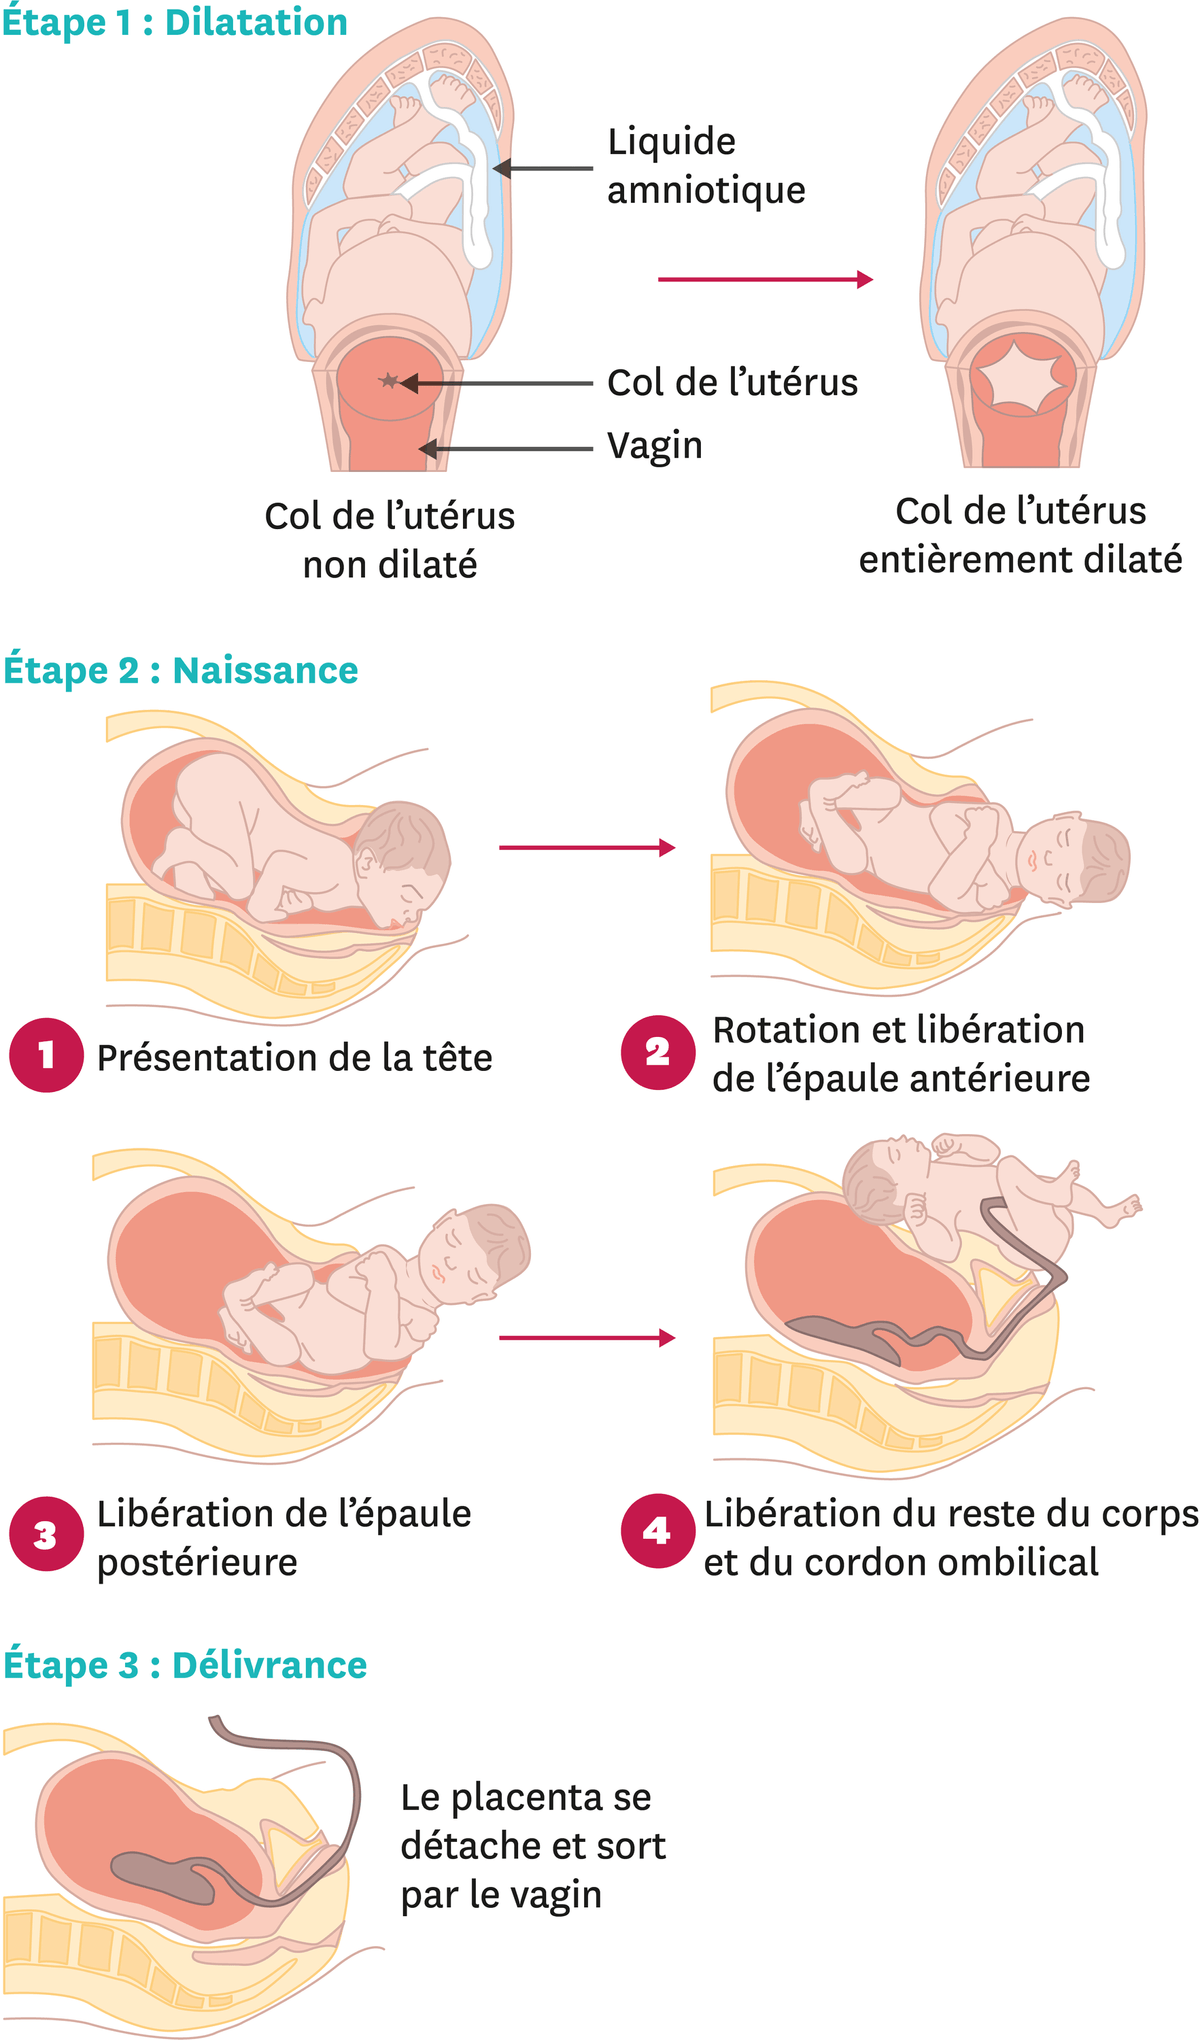 Les étapes de l'accouchement.